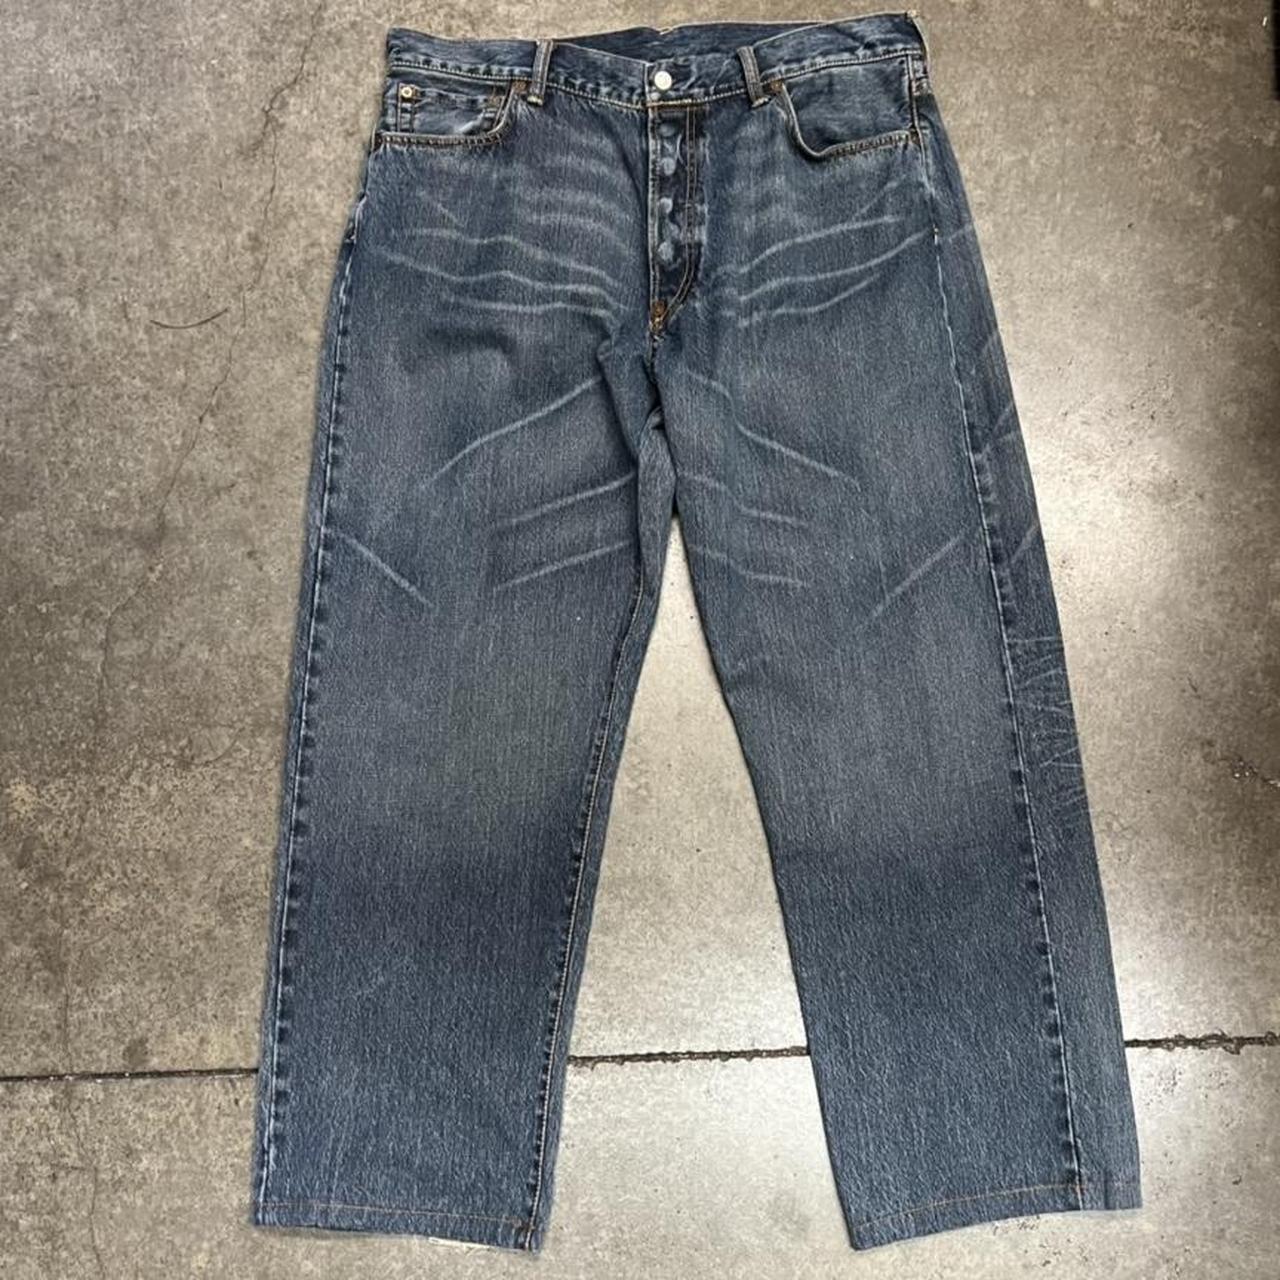 Vintage Evisu stitched/embroidered jeans size... - Depop